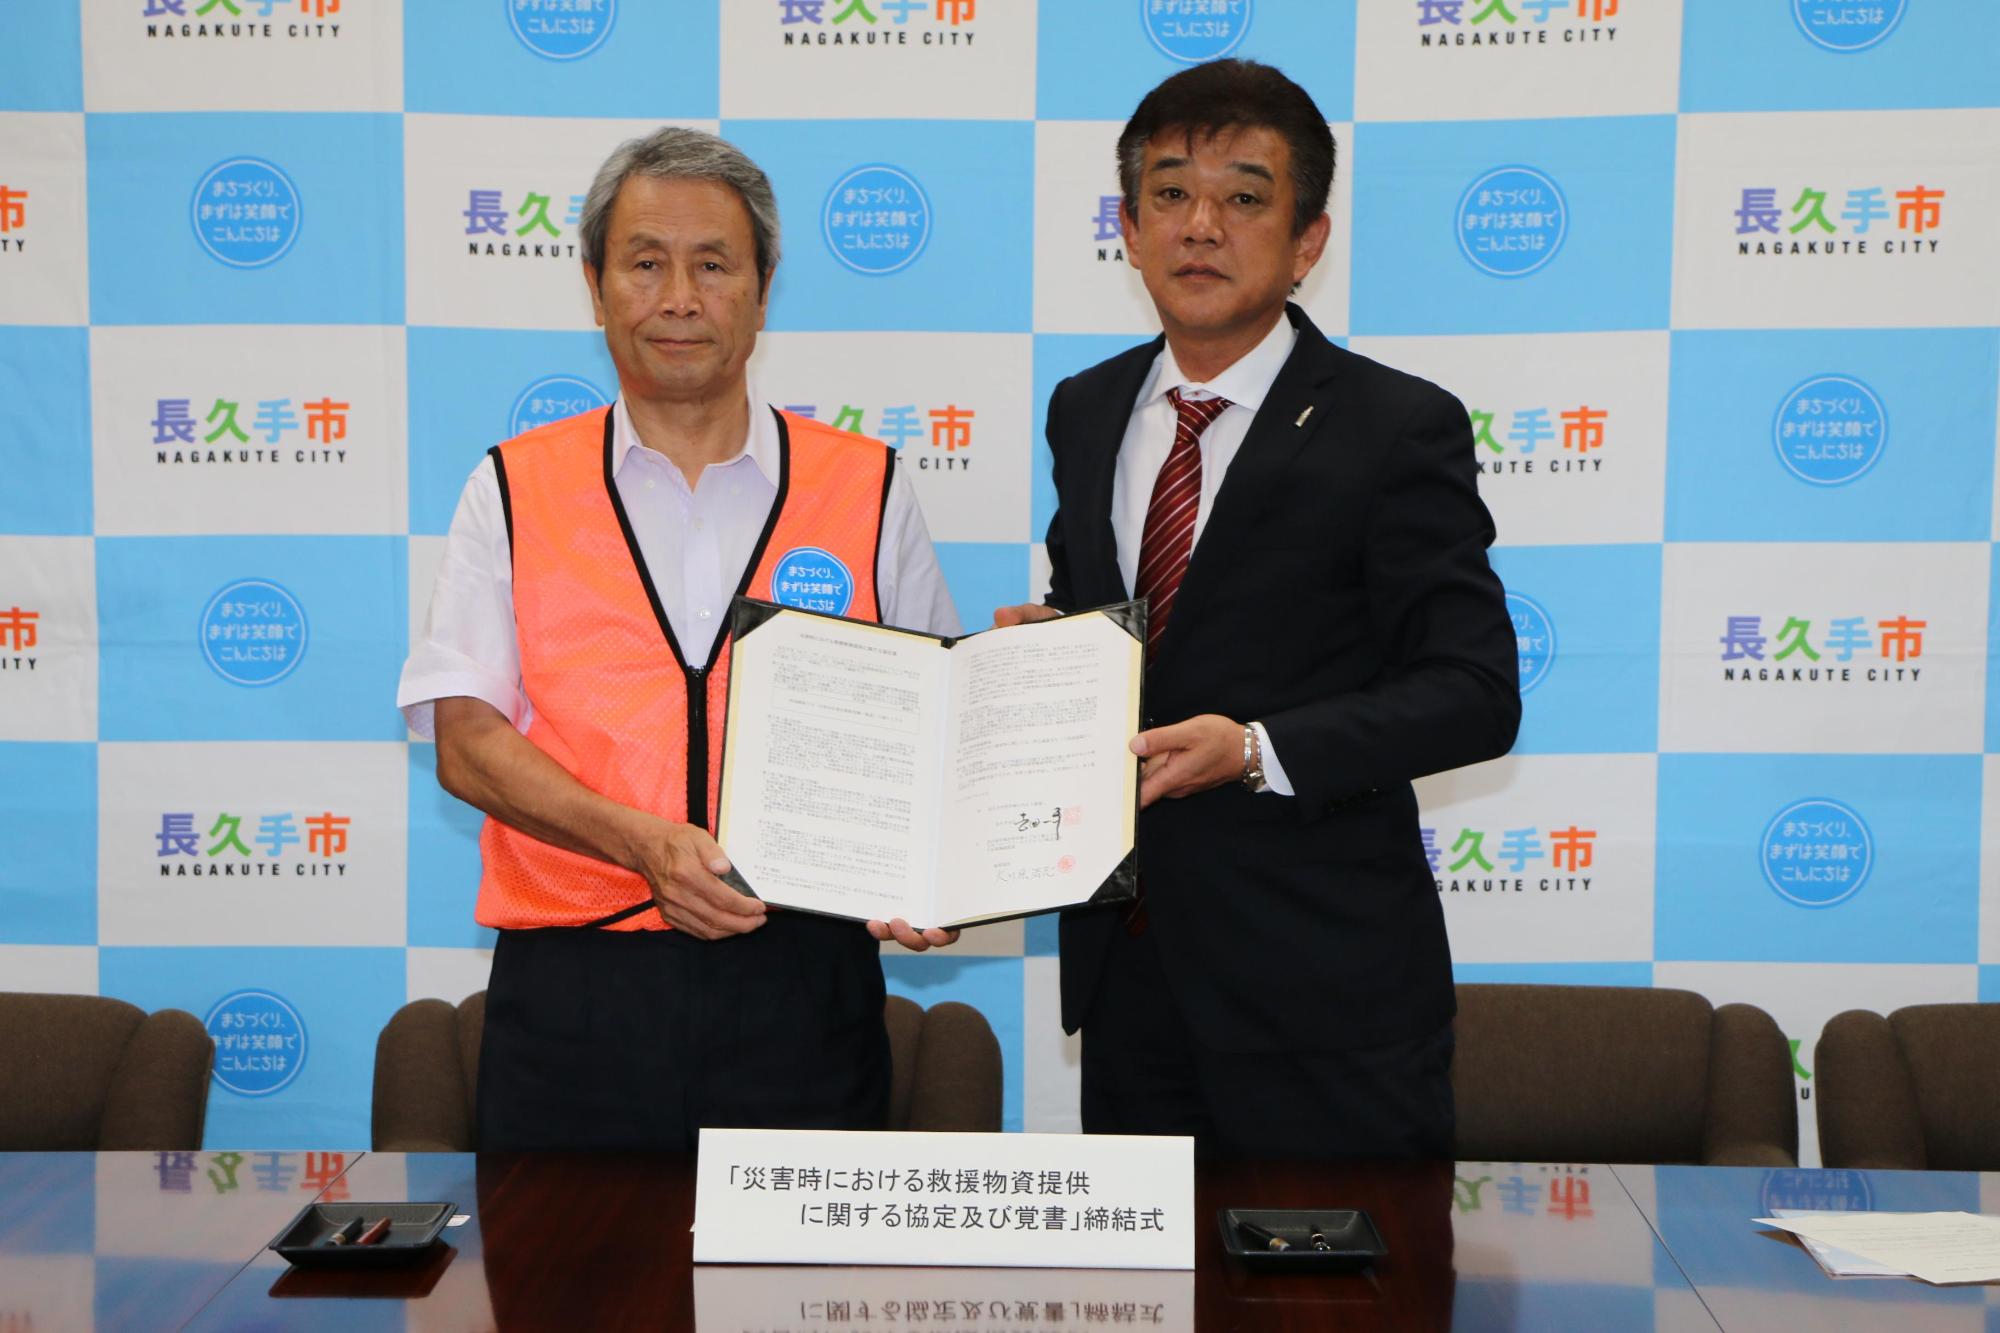 市長とコカ・コーライーストジャパン株式会社の関係者の男性が協定書を二人で持って広げて見せ、並んで写っている写真